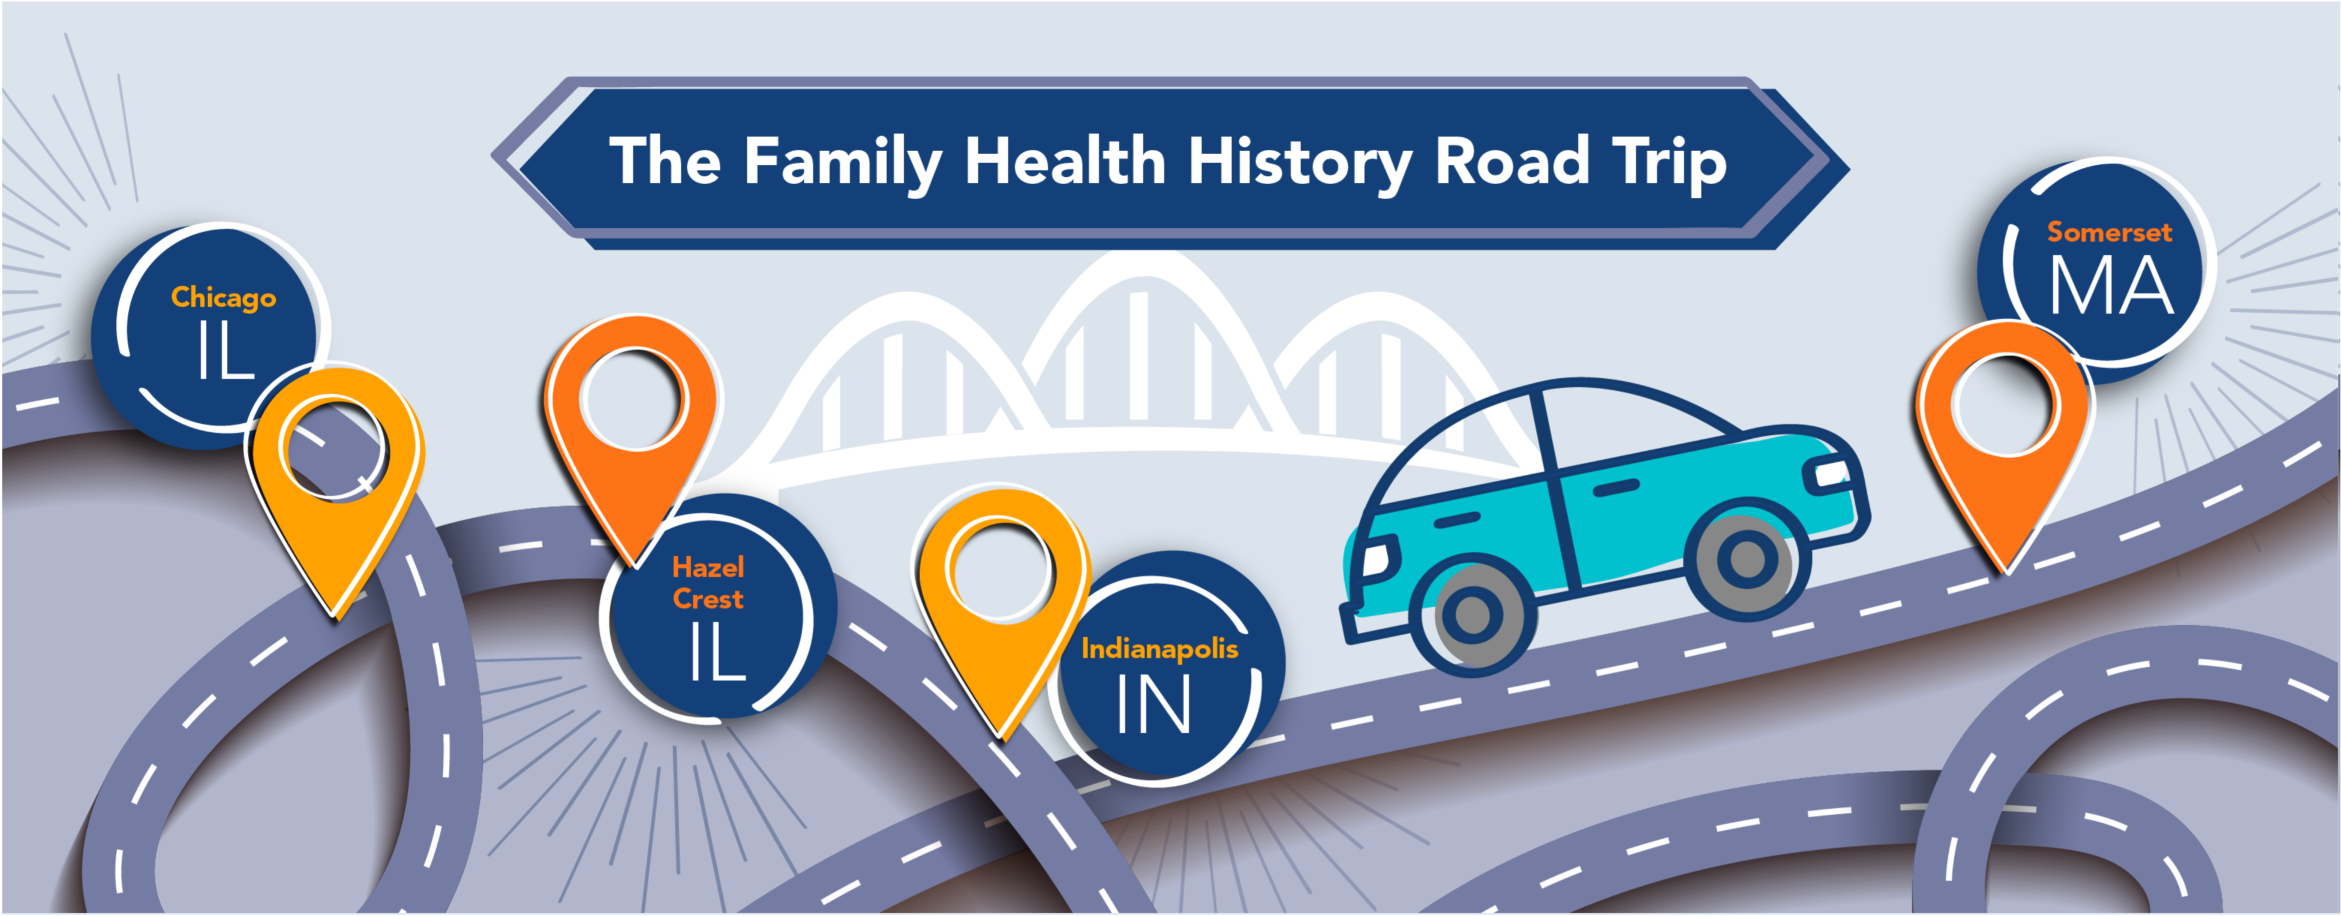 Family health history road trip